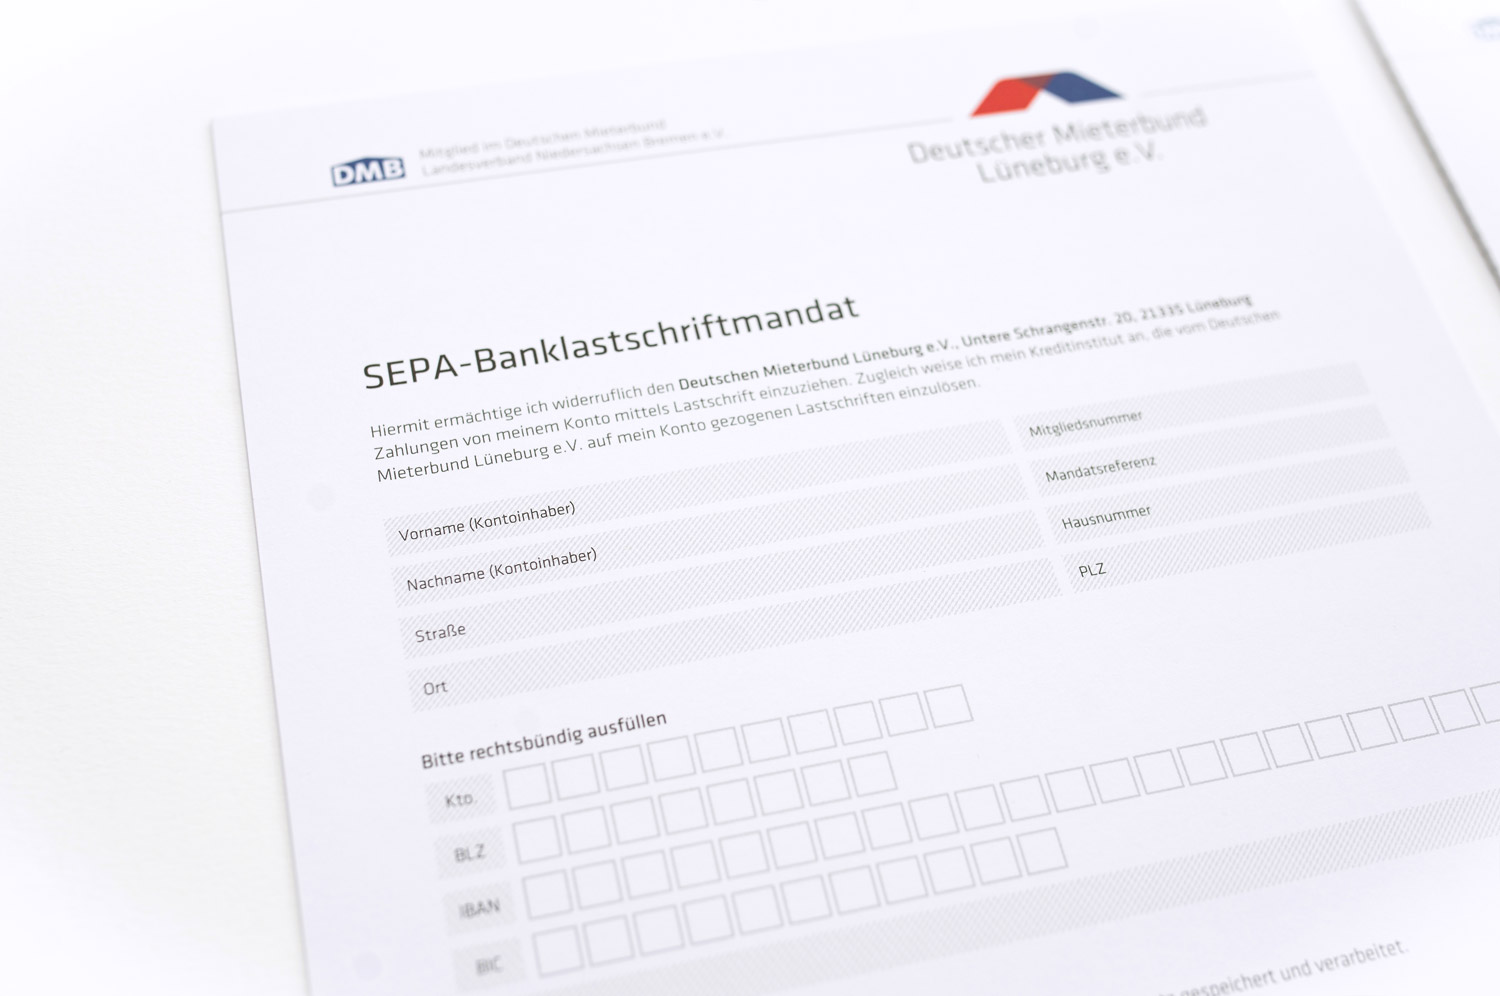 SEPA-Banklastschriftmandat für den Mieterbund Lüneburg